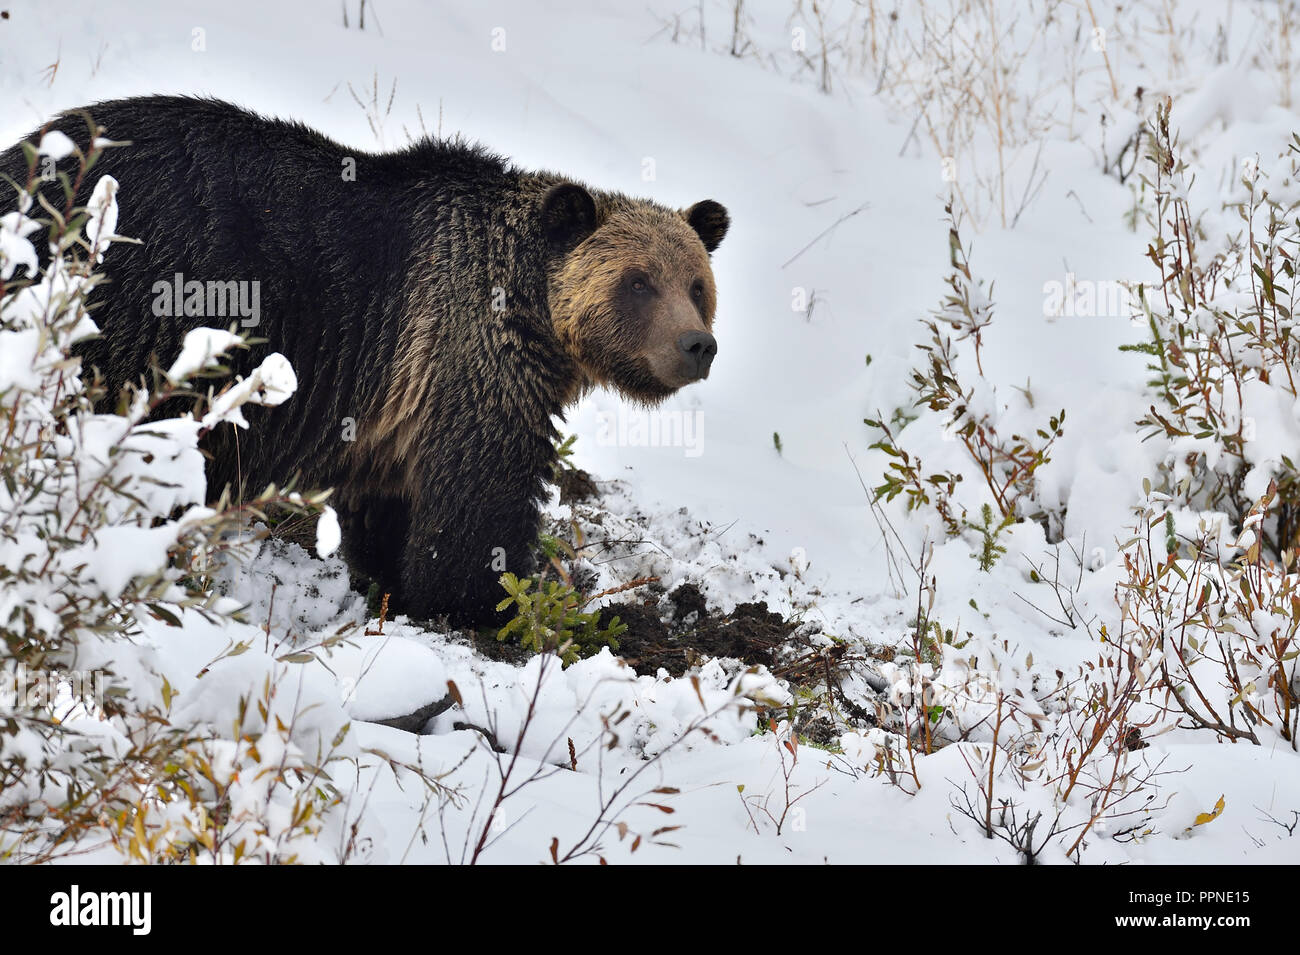 Un grizzli adulte, Ursus arctos, qui a été assemblé dans le cadre d'un programme d'étude de la faune, creuse des racines le long d'une colline enneigée Banque D'Images